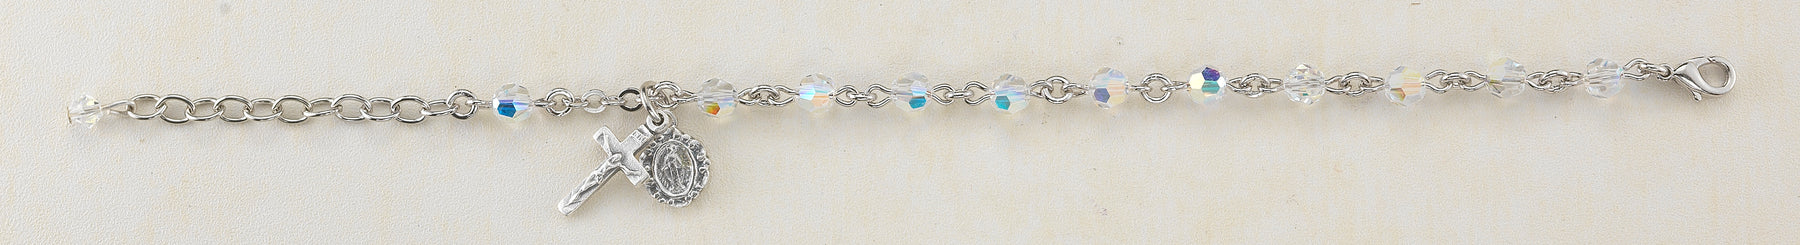 5mm Round Swarovski Crystal Rosary Bracelet